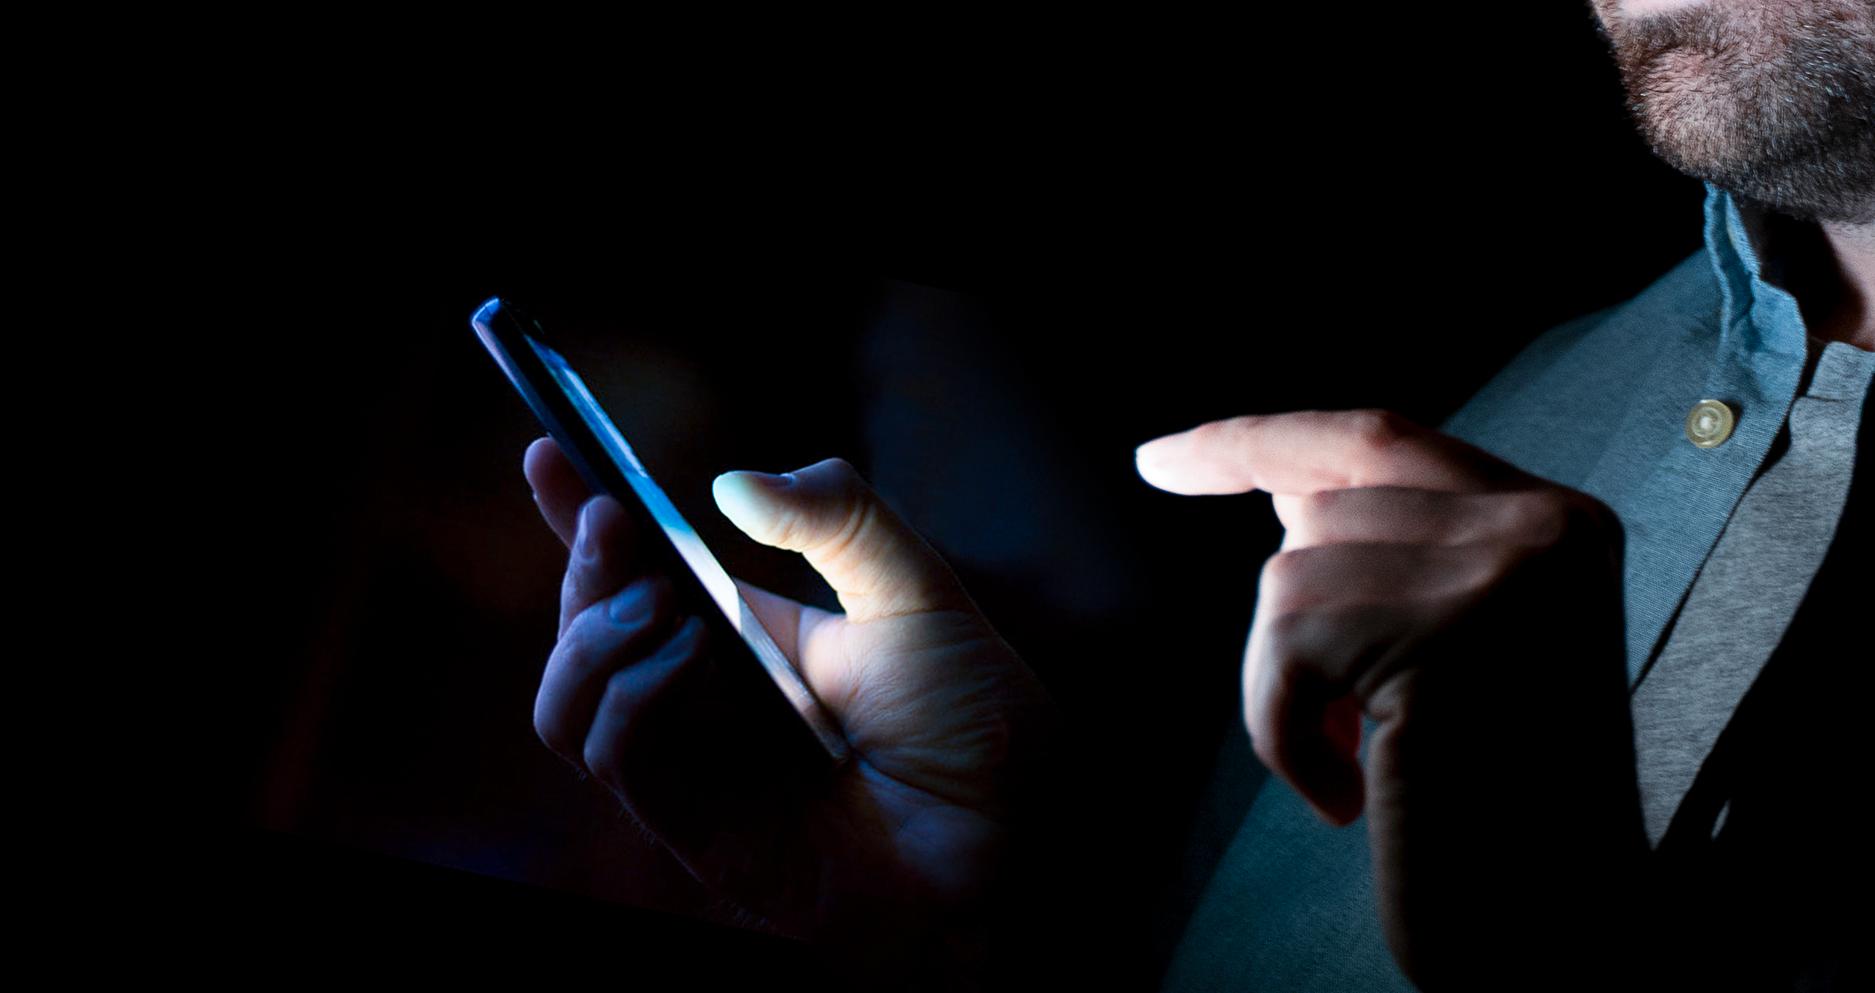 Regeringen vill göra det svårare för gängkriminella att hitta privatpersoners uppgifter på nätet.